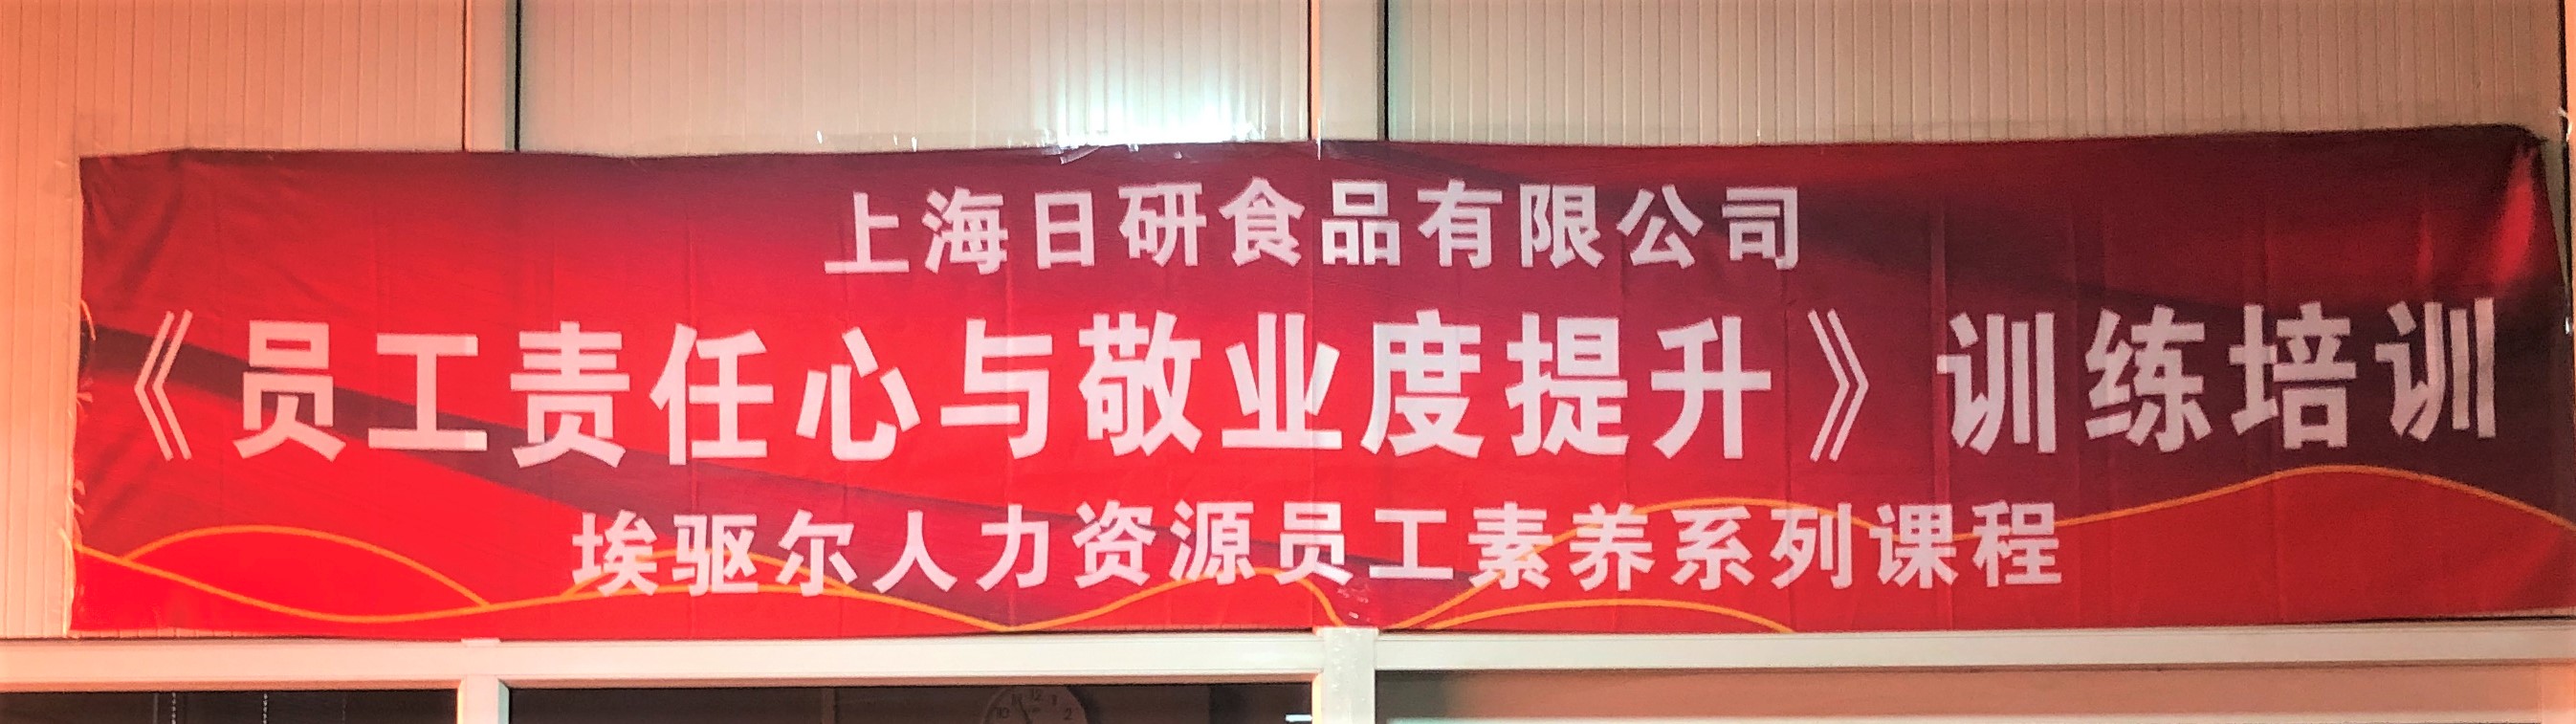 第十六届湖北·武汉台湾周在汉开幕